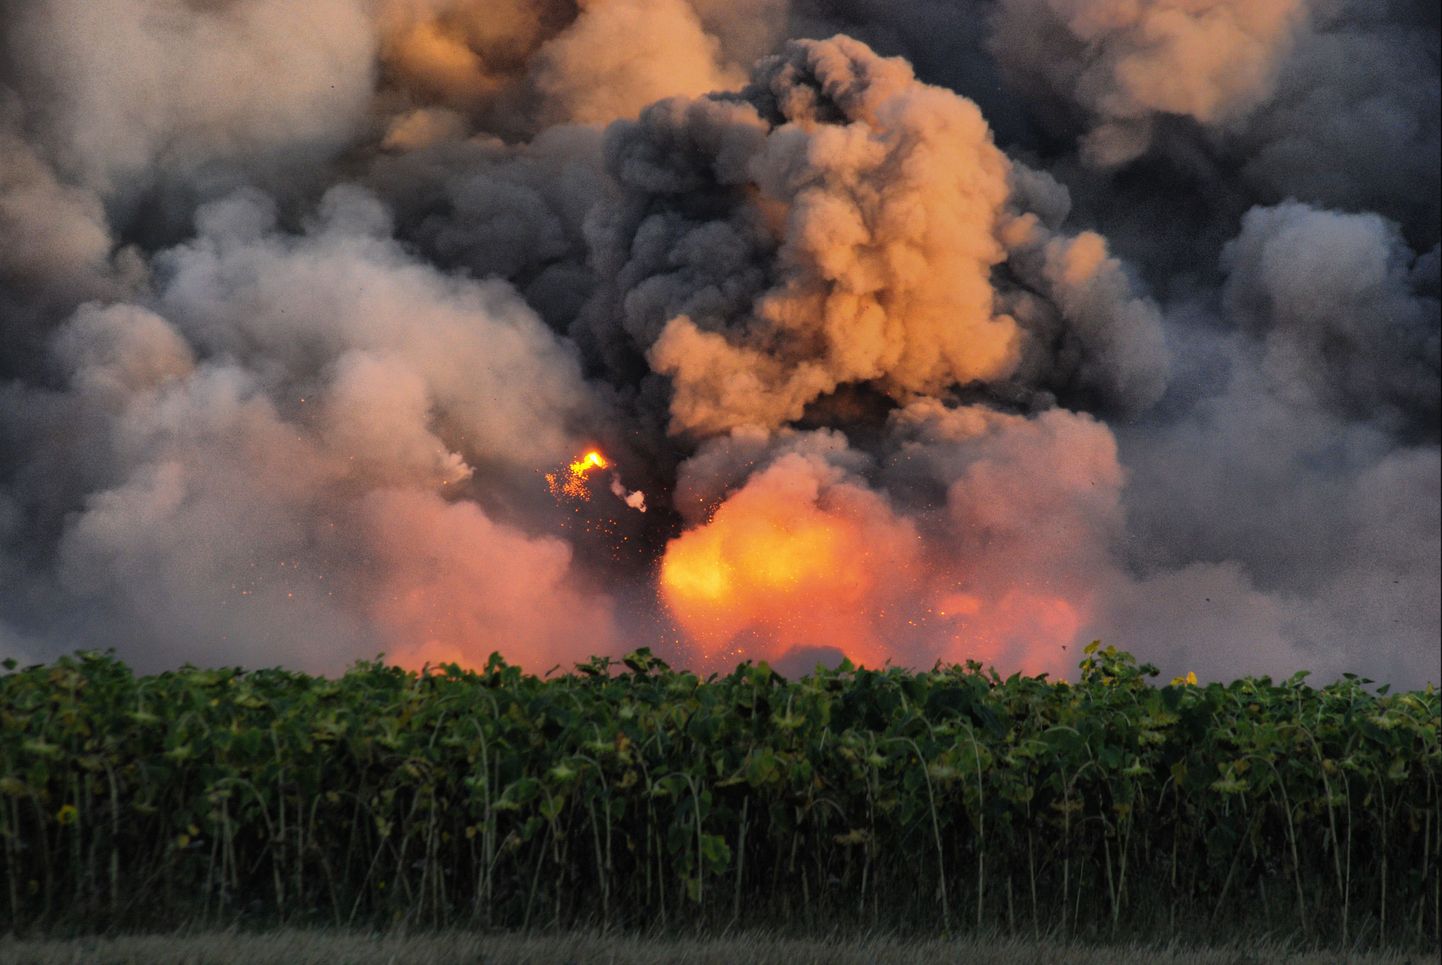 Pilt on tehtud mullu suvel, kui täna süttinud kemikaalilao kõrval põles laskemoonaladu.